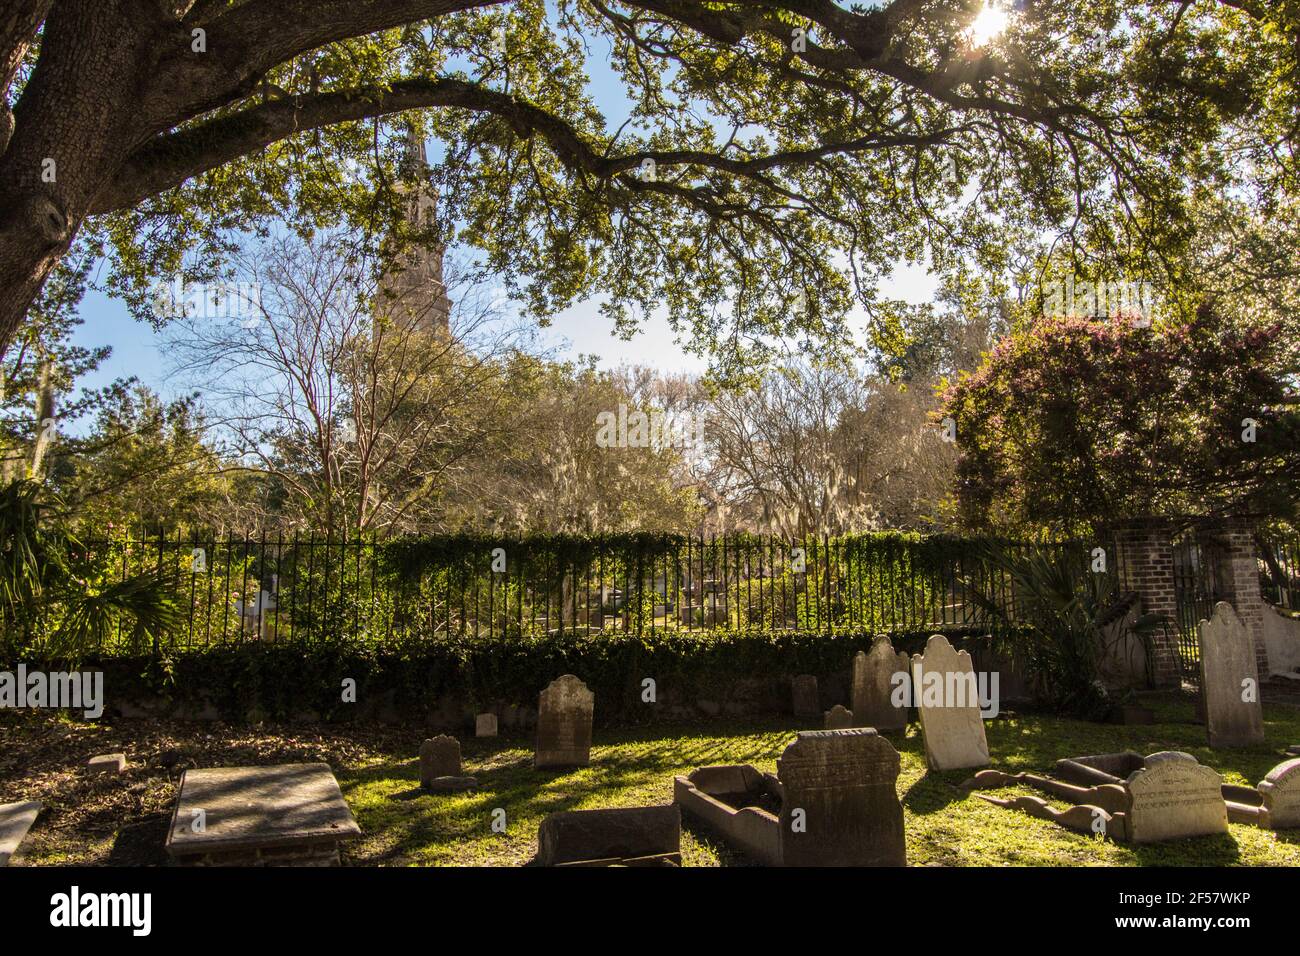 Charleston, Carolina del Sur, EE.UU. - 23 de febrero de 2021: Exterior de la Iglesia Congregacional Circular y cementerio. El cementerio tiene tumbas de 1700s Foto de stock